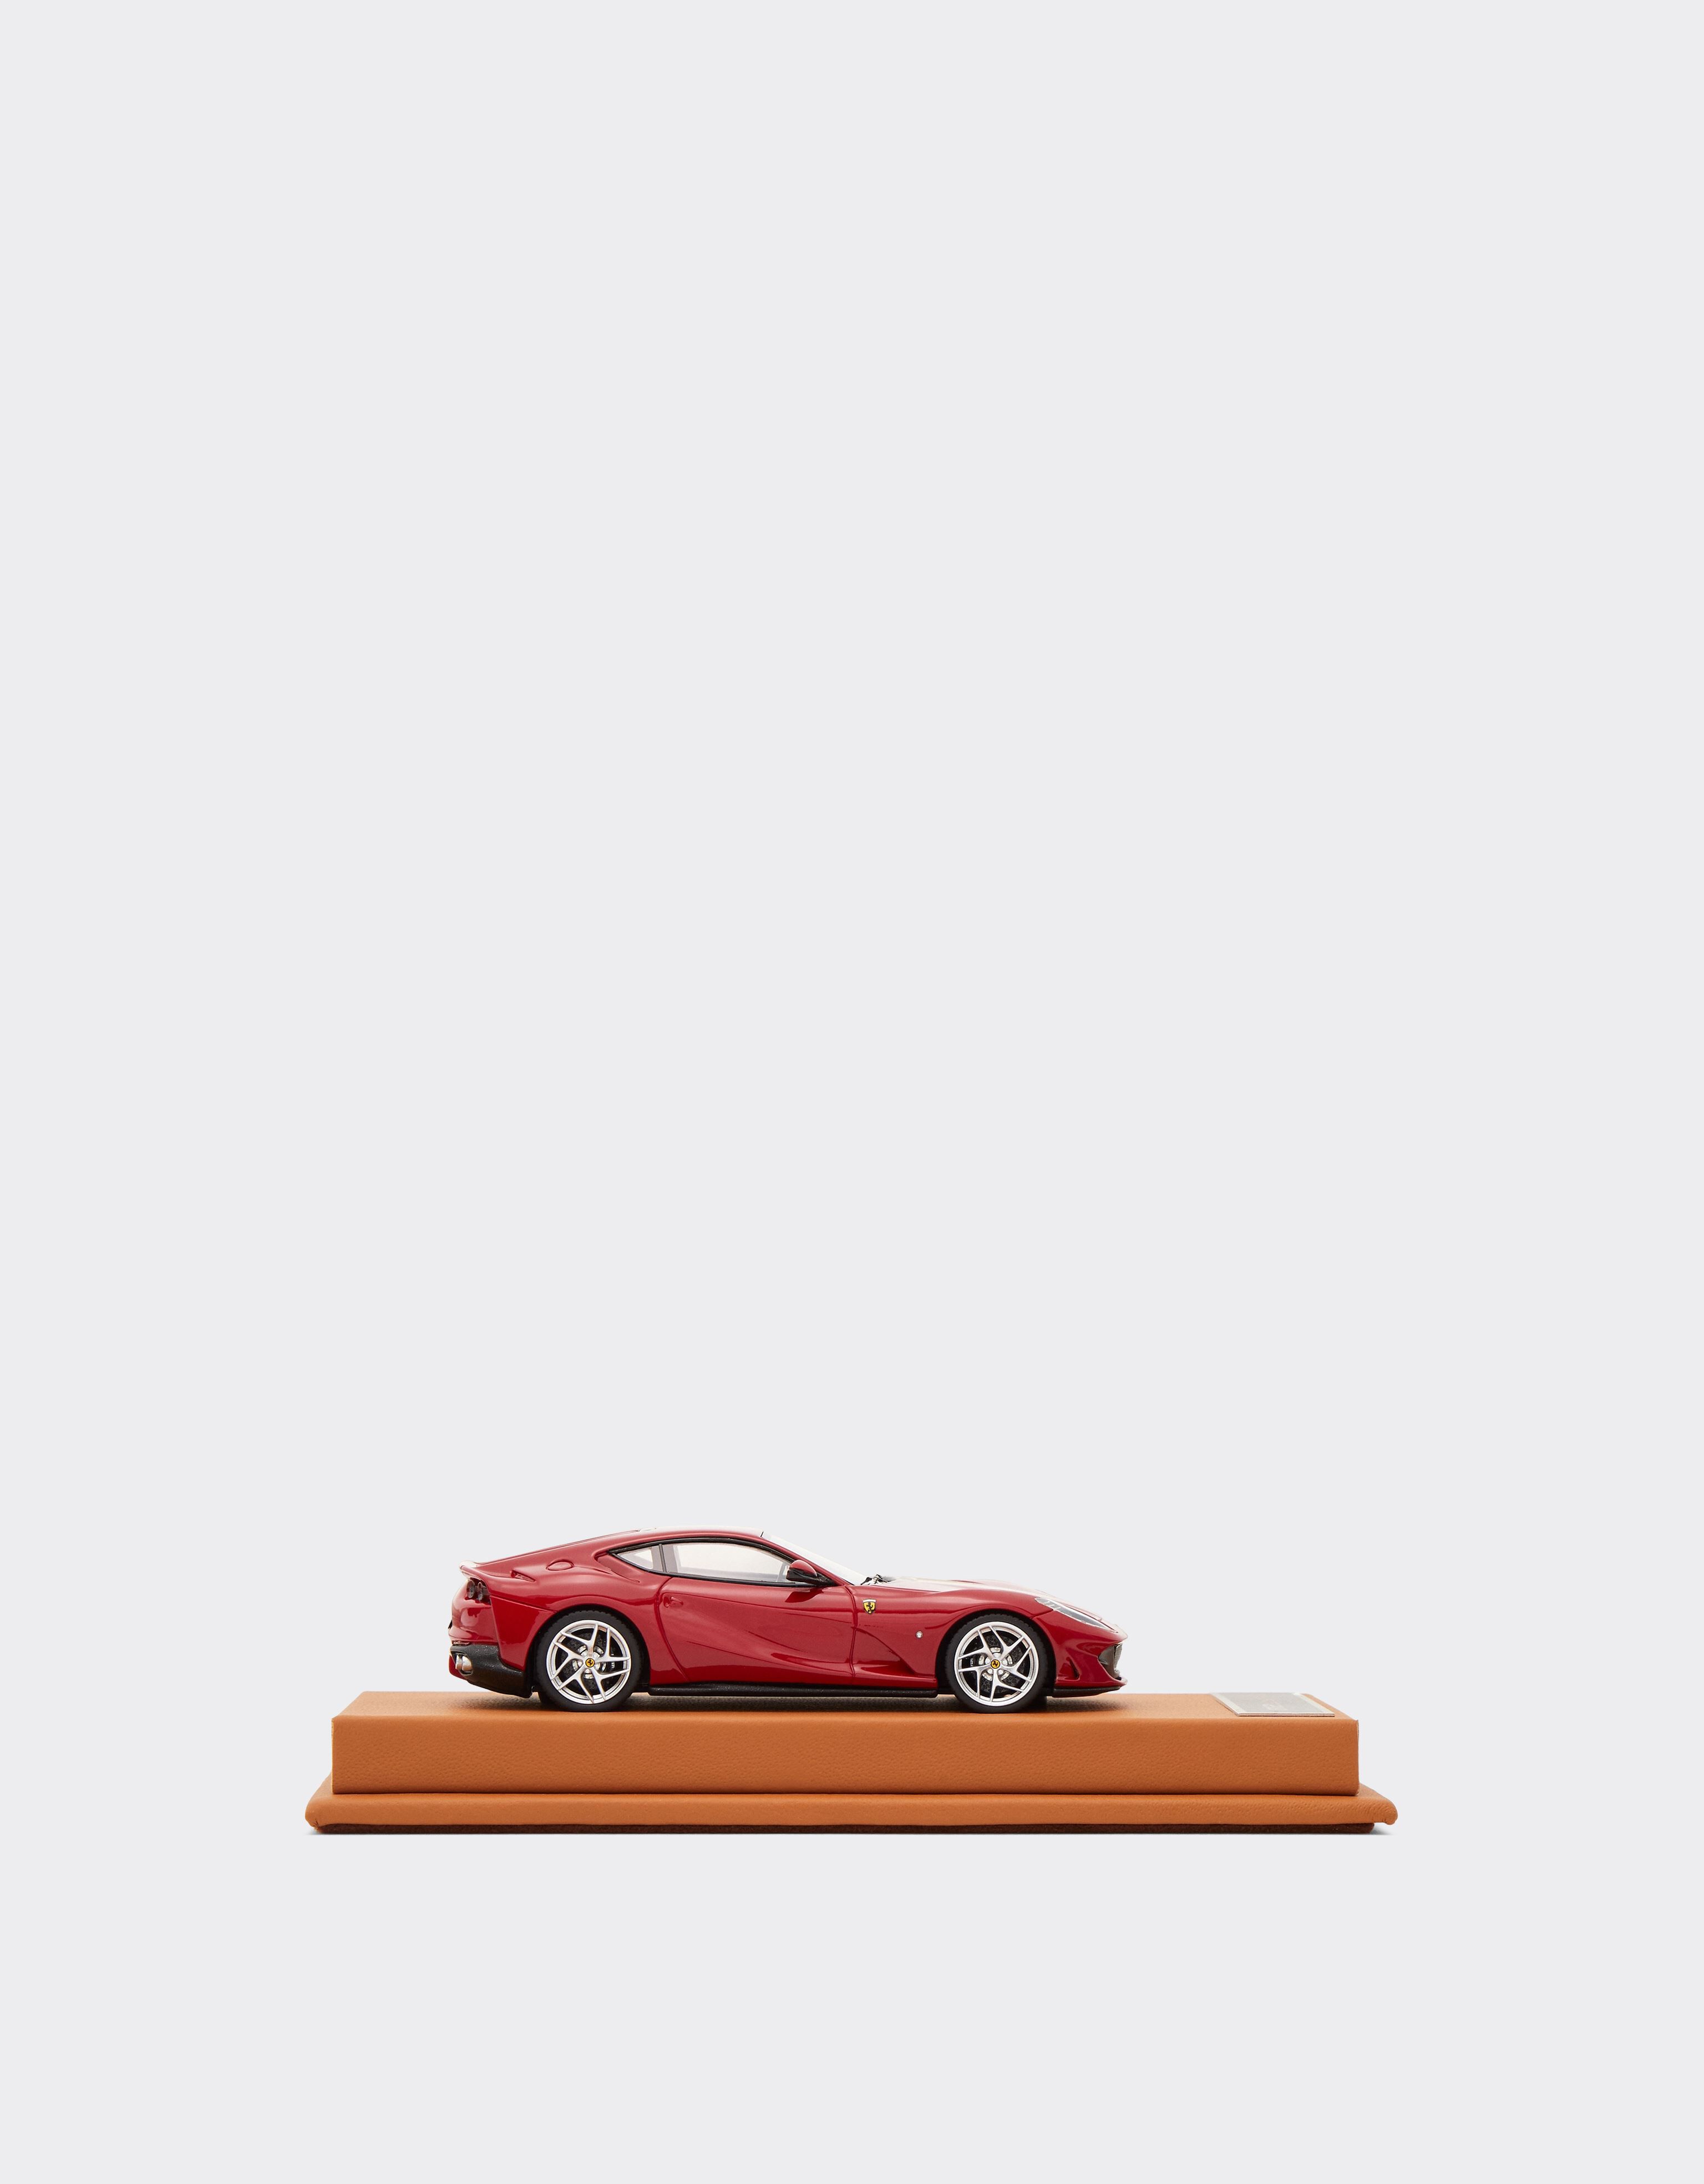 Ferrari Ferrari 812 Superfast 1:43スケール モデルカー レッド 47298f